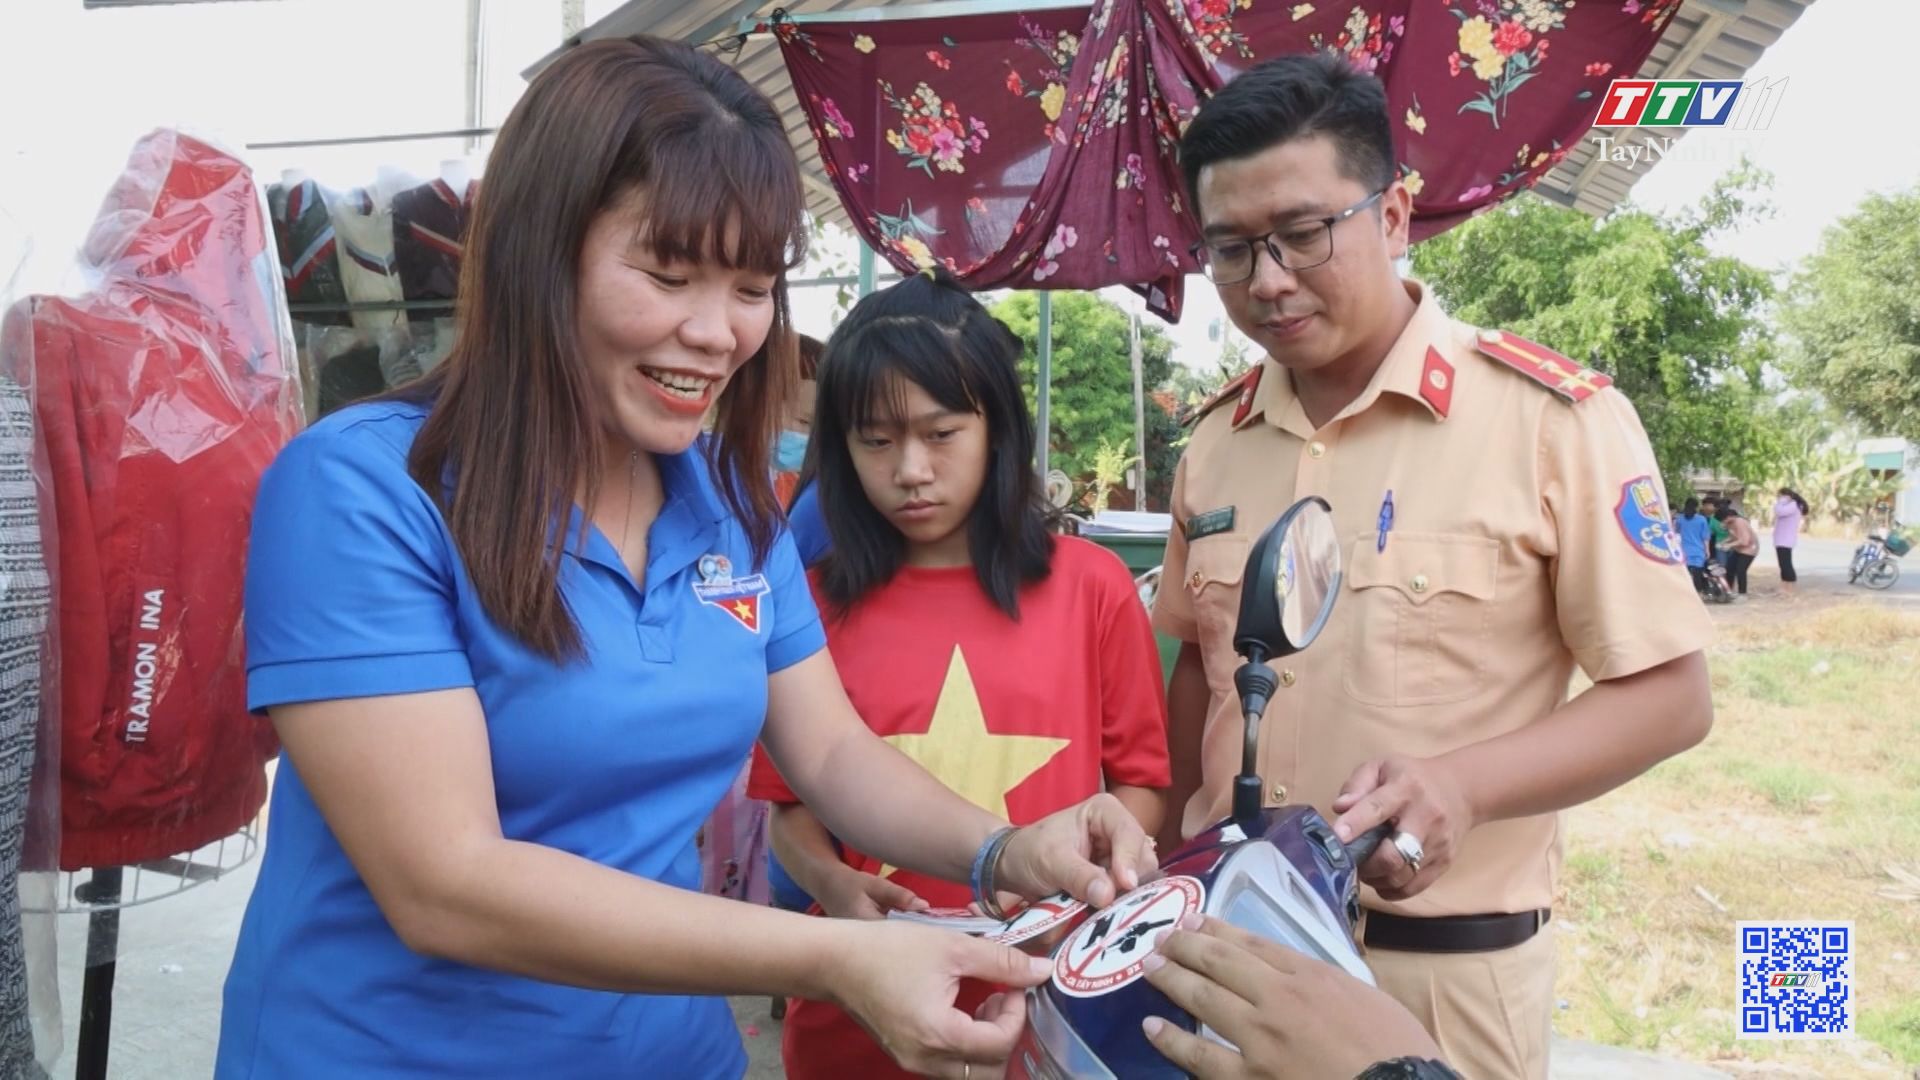 CSGT Tây Ninh đổi mới công tác tuyên truyền cho người tham gia giao thông | VĂN HÓA GIAO THÔNG | TayNinhTV